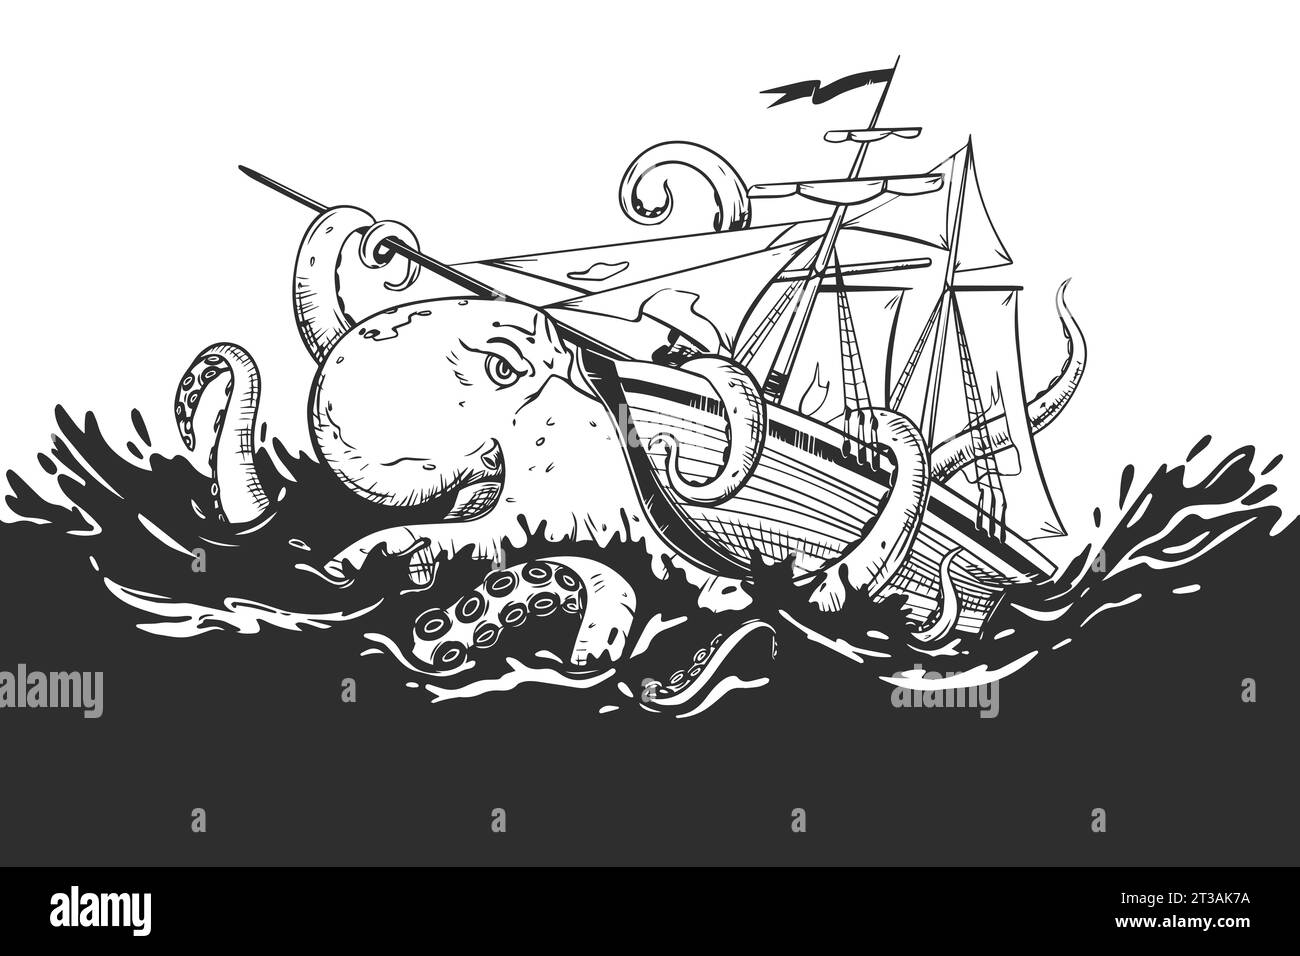 Un kraken enragé attaque un voilier commercial. Monstre mythique des profondeurs sombres. La pieuvre enroule ses tentacules autour du voilier et tire Illustration de Vecteur